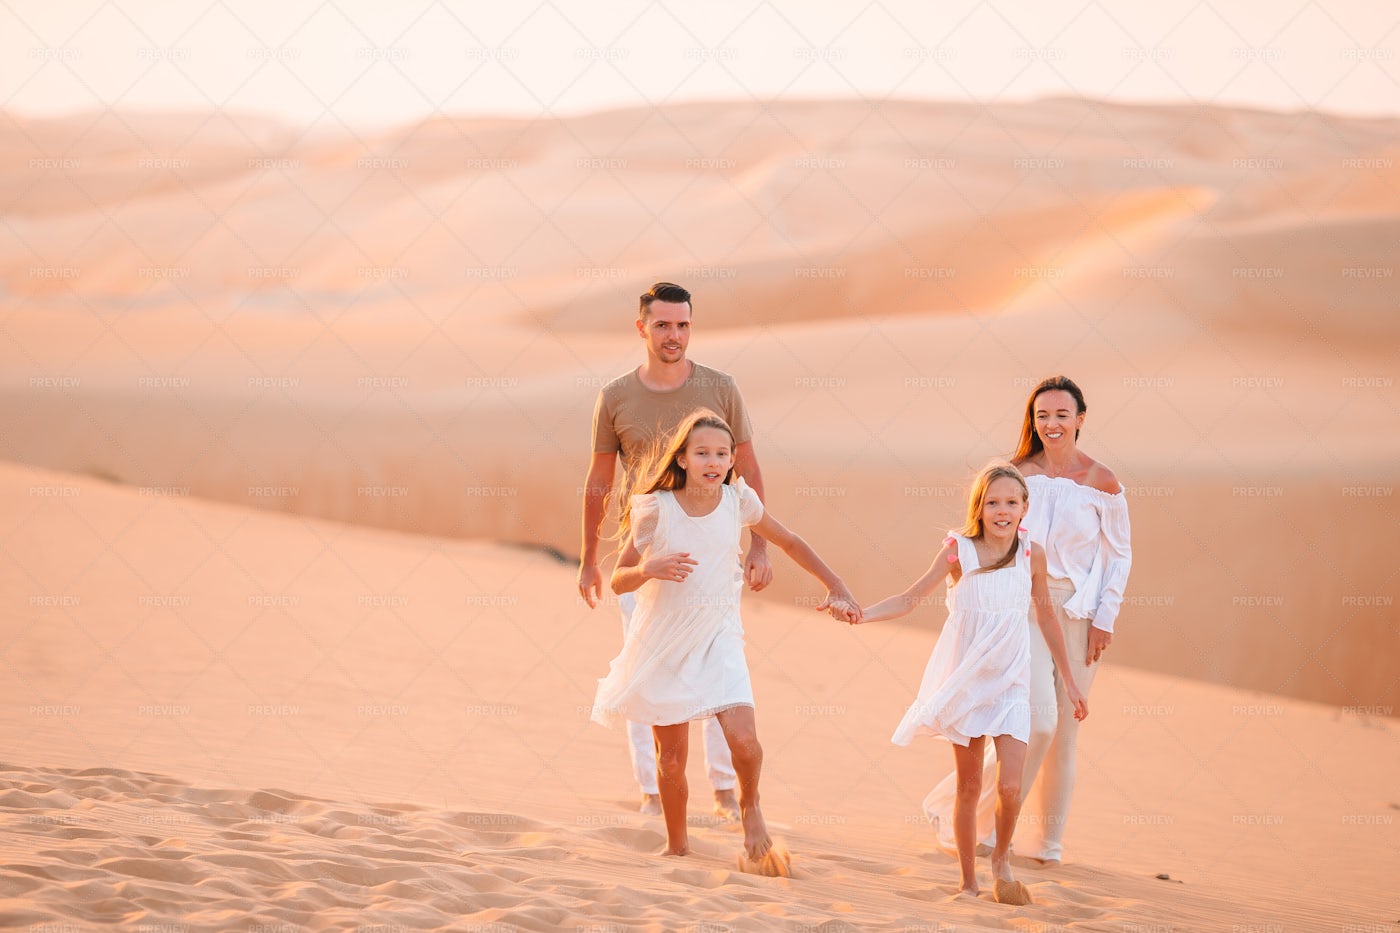 Family Walking In The Desert: Stock Photos